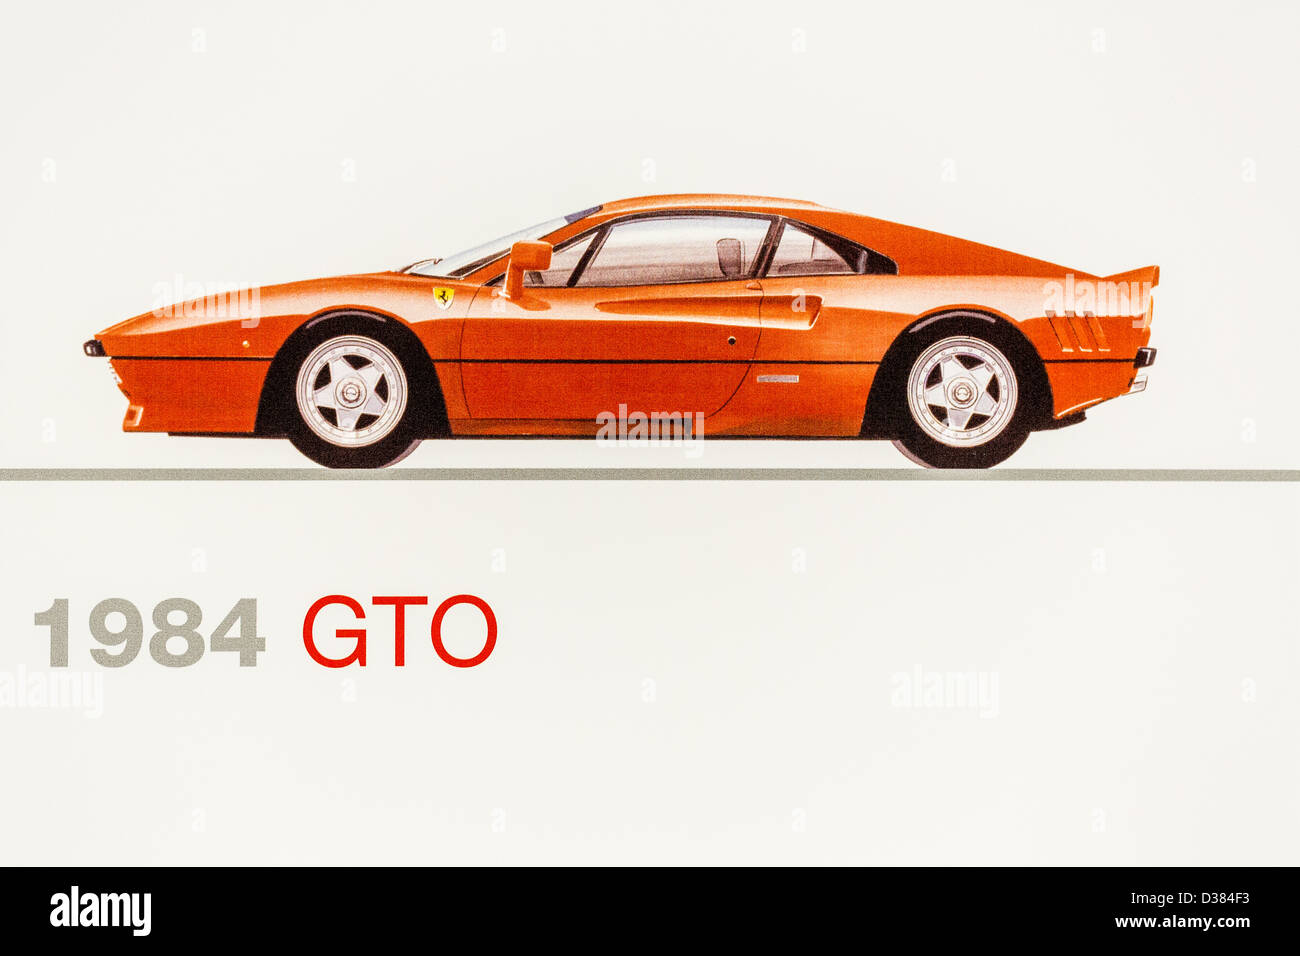 Graphic representation of a 1984 Ferrari GTO, Ferrari Museum, Maranello, Italy Stock Photo